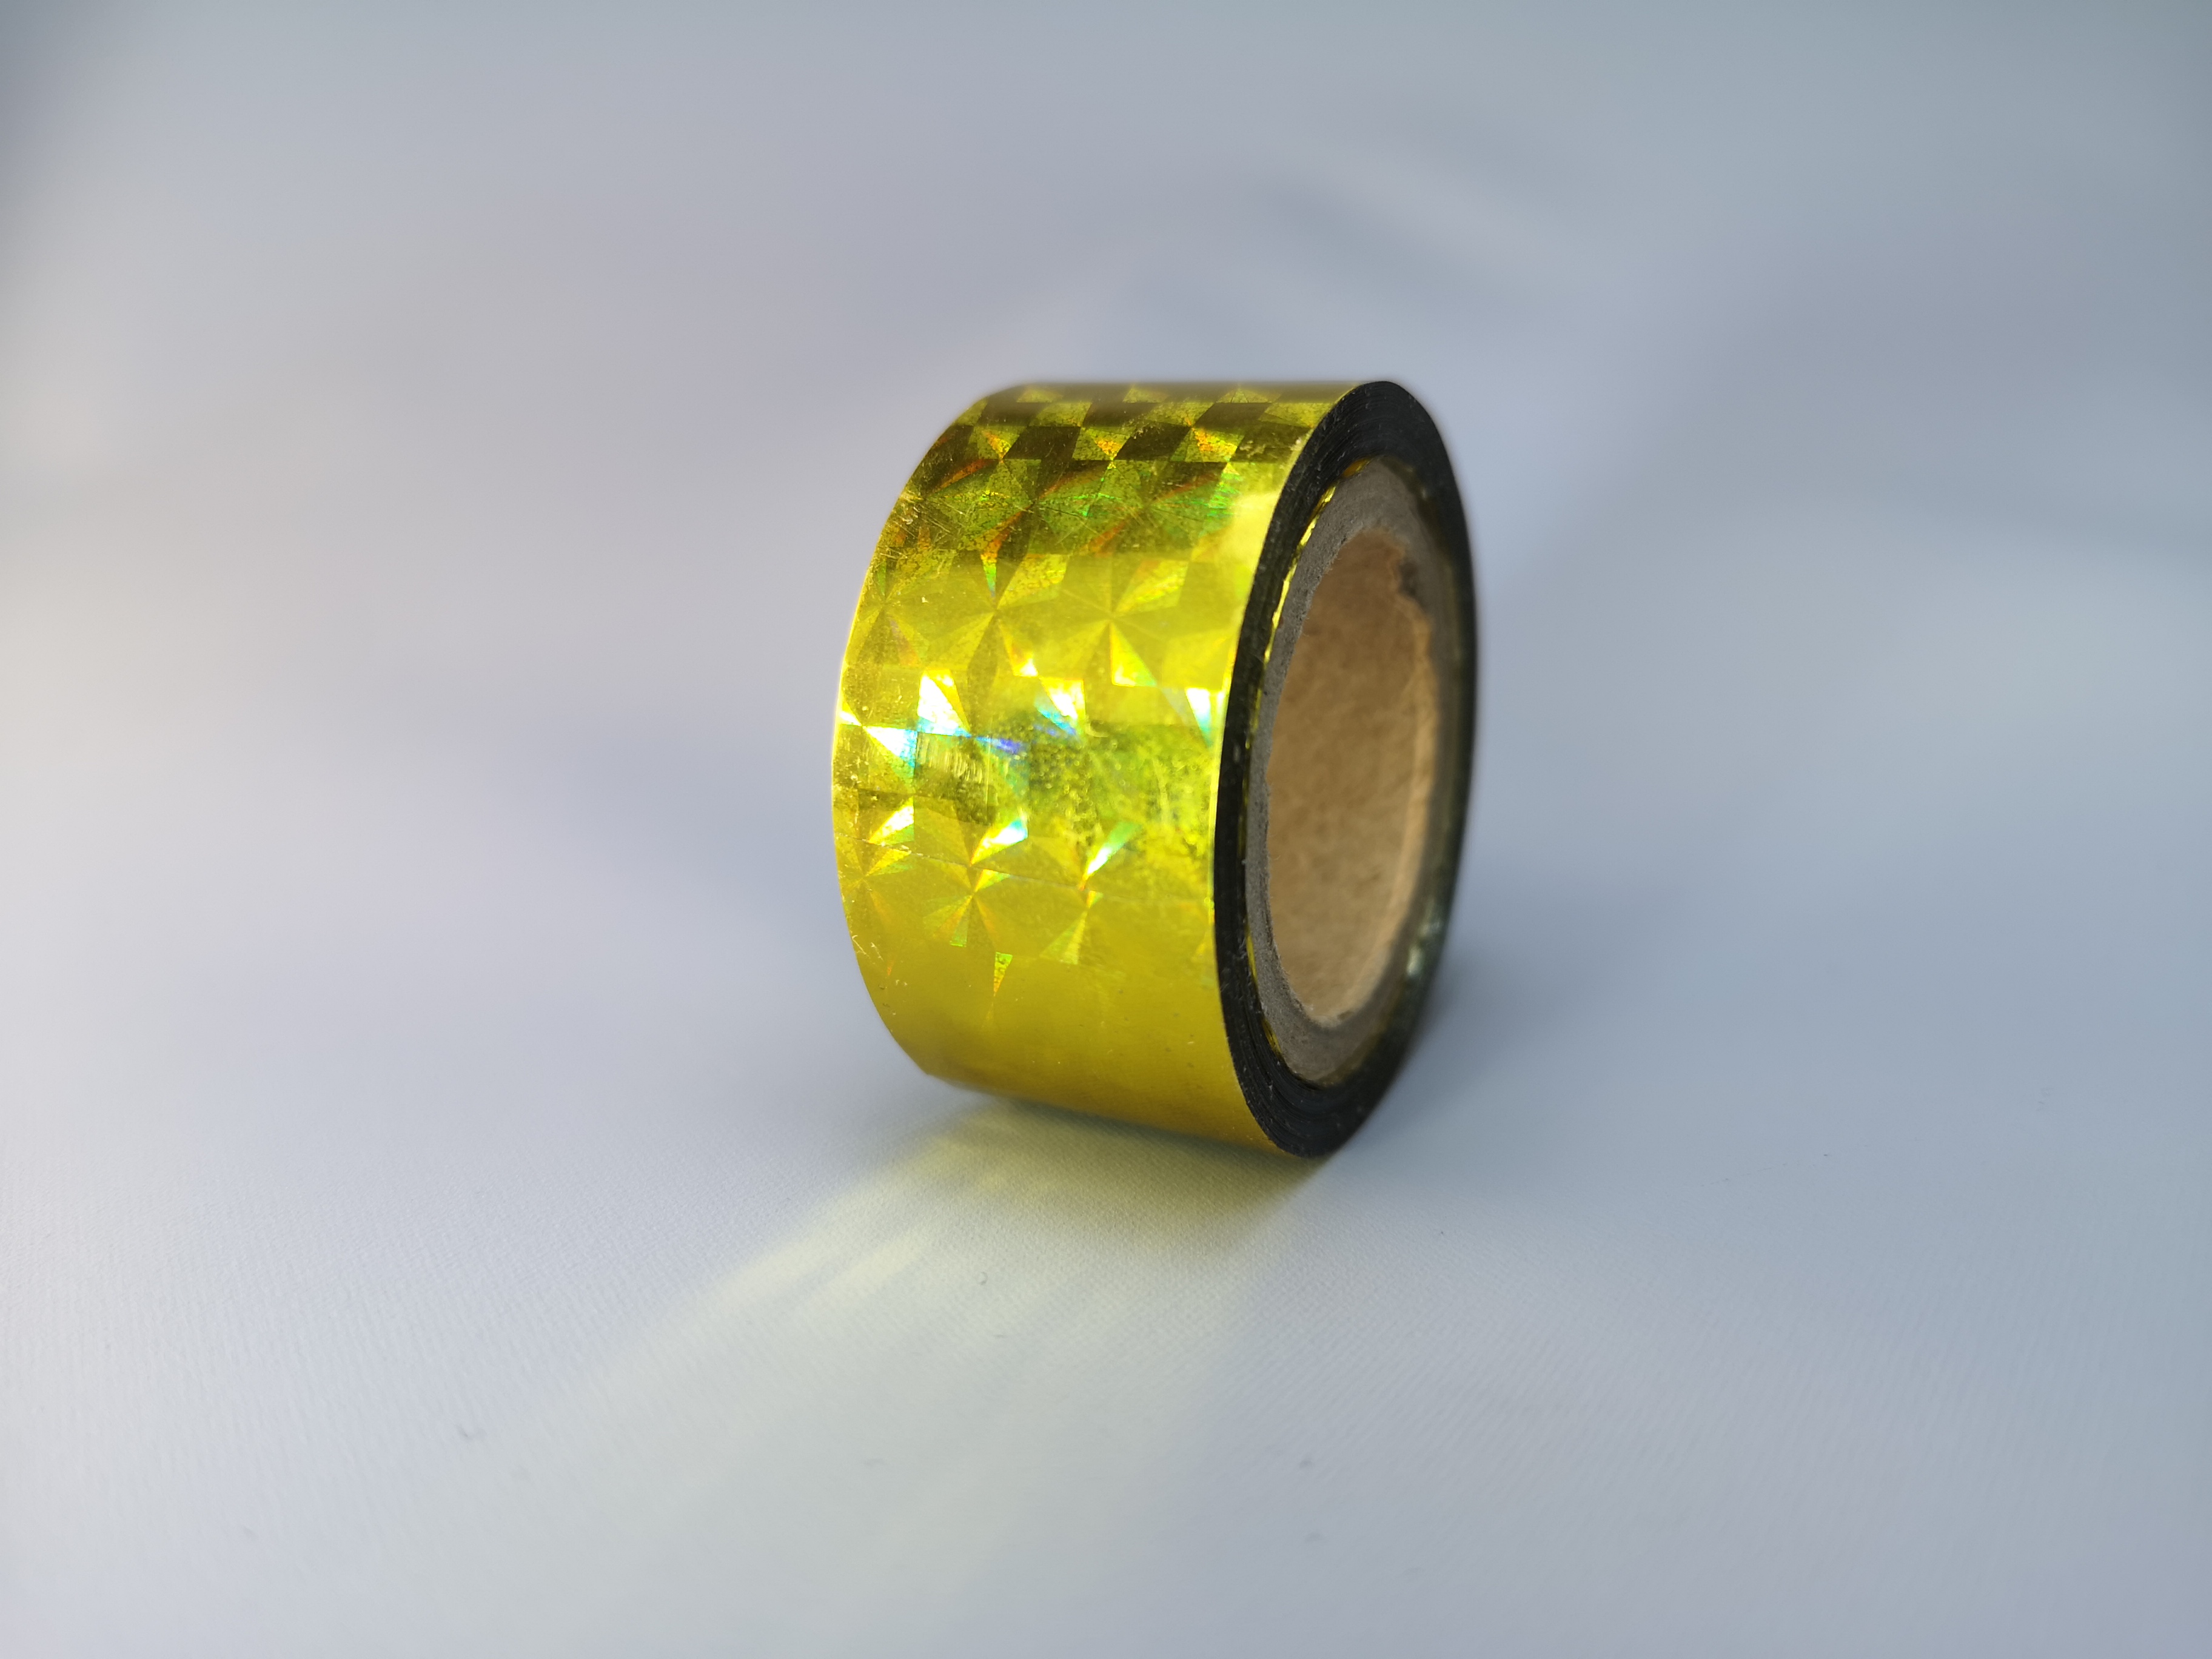 Holografic Prisma Gold 11m Deco-Tape